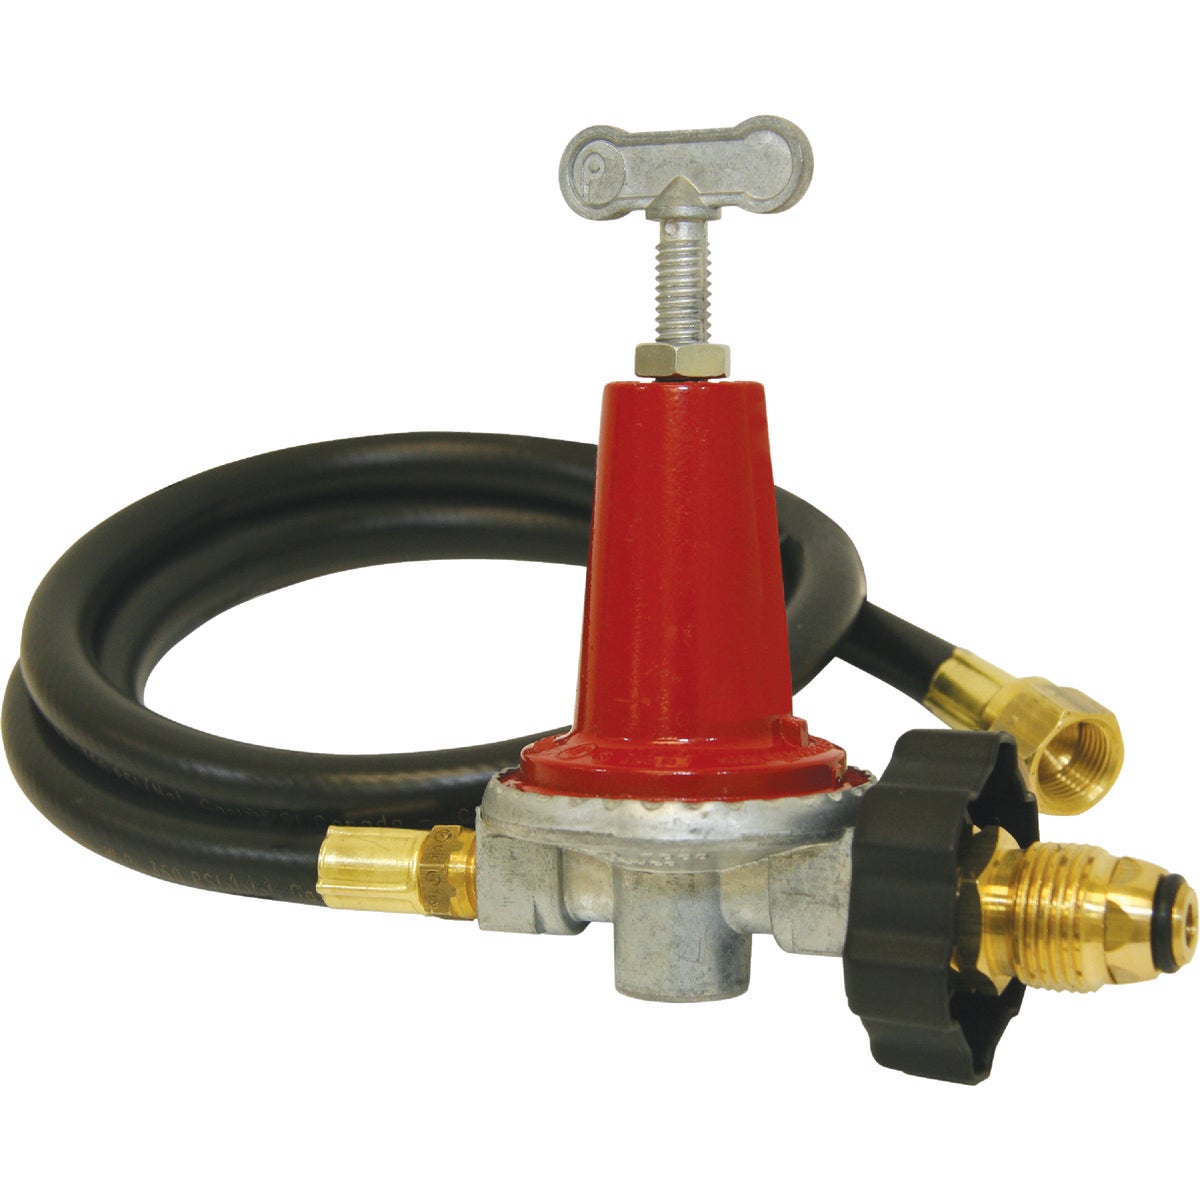 Item 801593, 40 psi adjustable regulator kit is designed for high pressure propane 